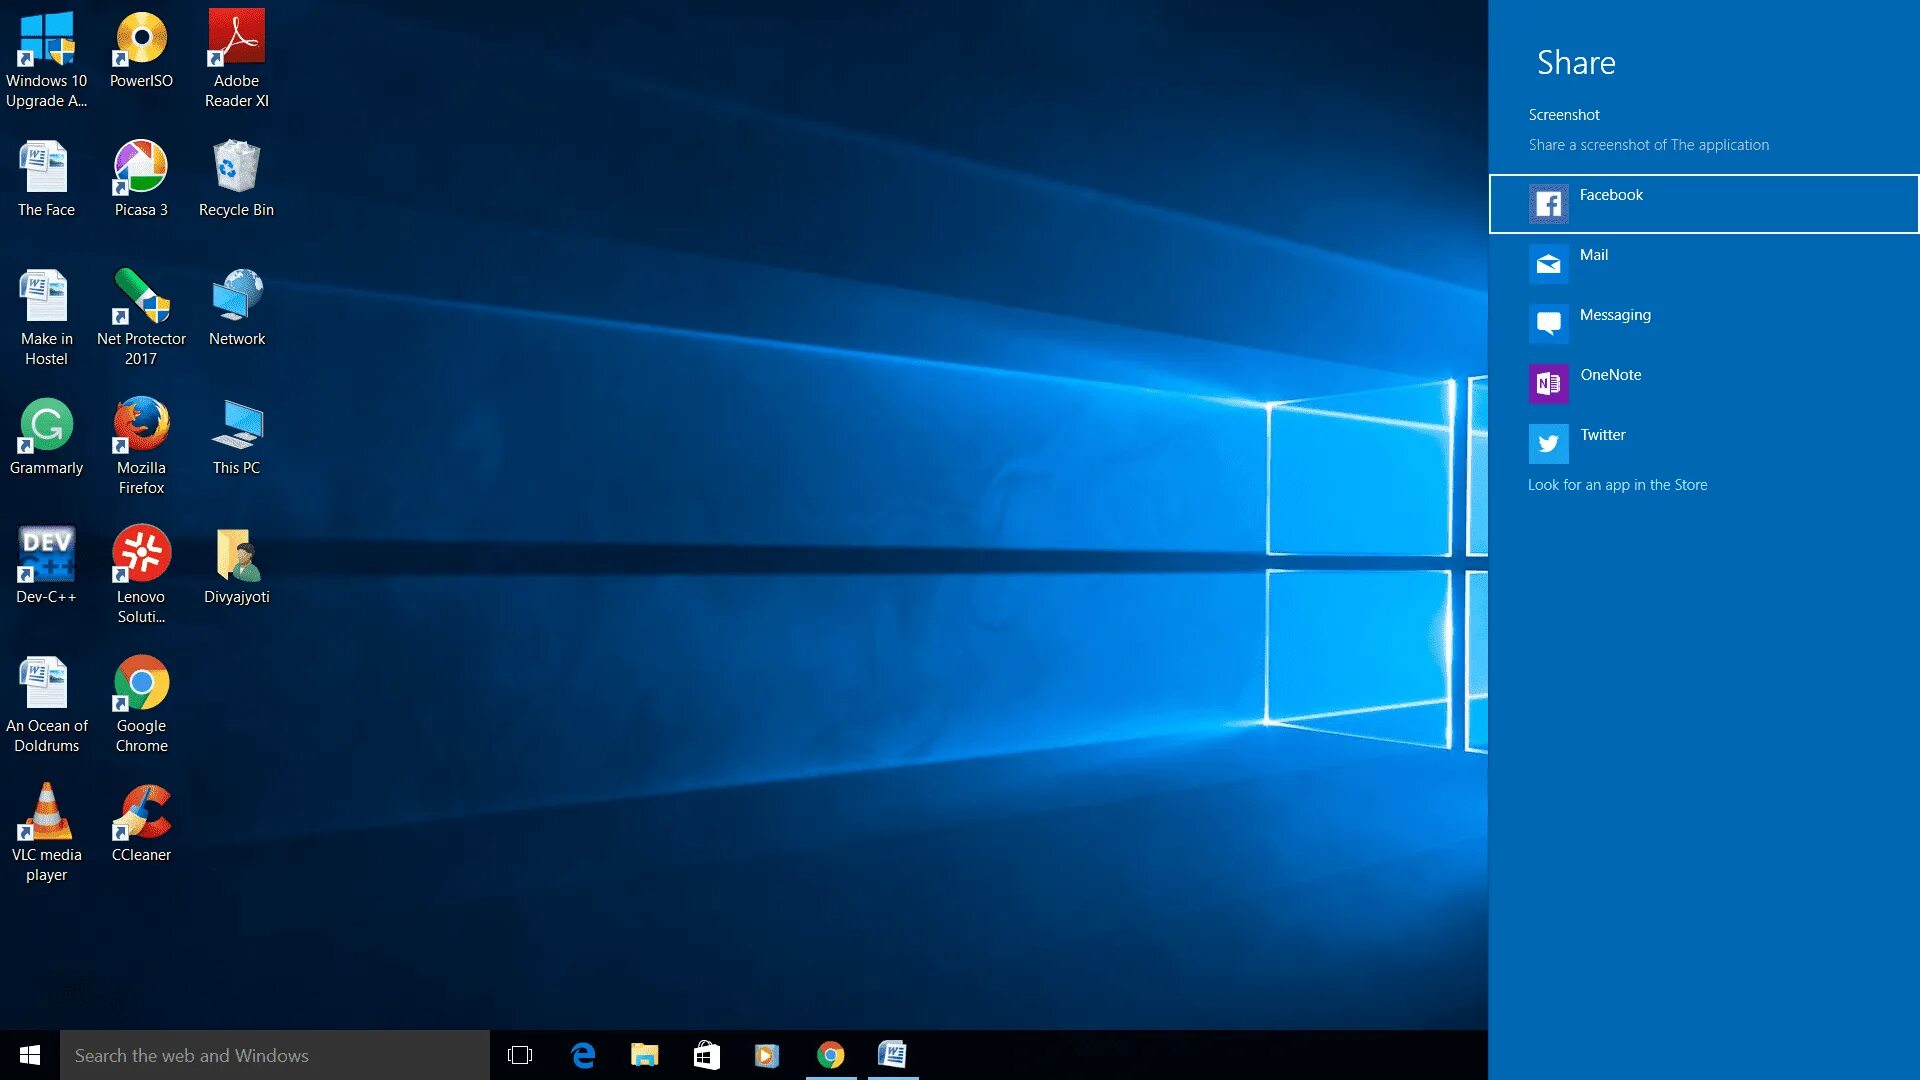 Скриншот на виндовс 10. Экран виндовс 10. Скрин экрана виндовс 10. Скриншот рабочего стола Windows 10.